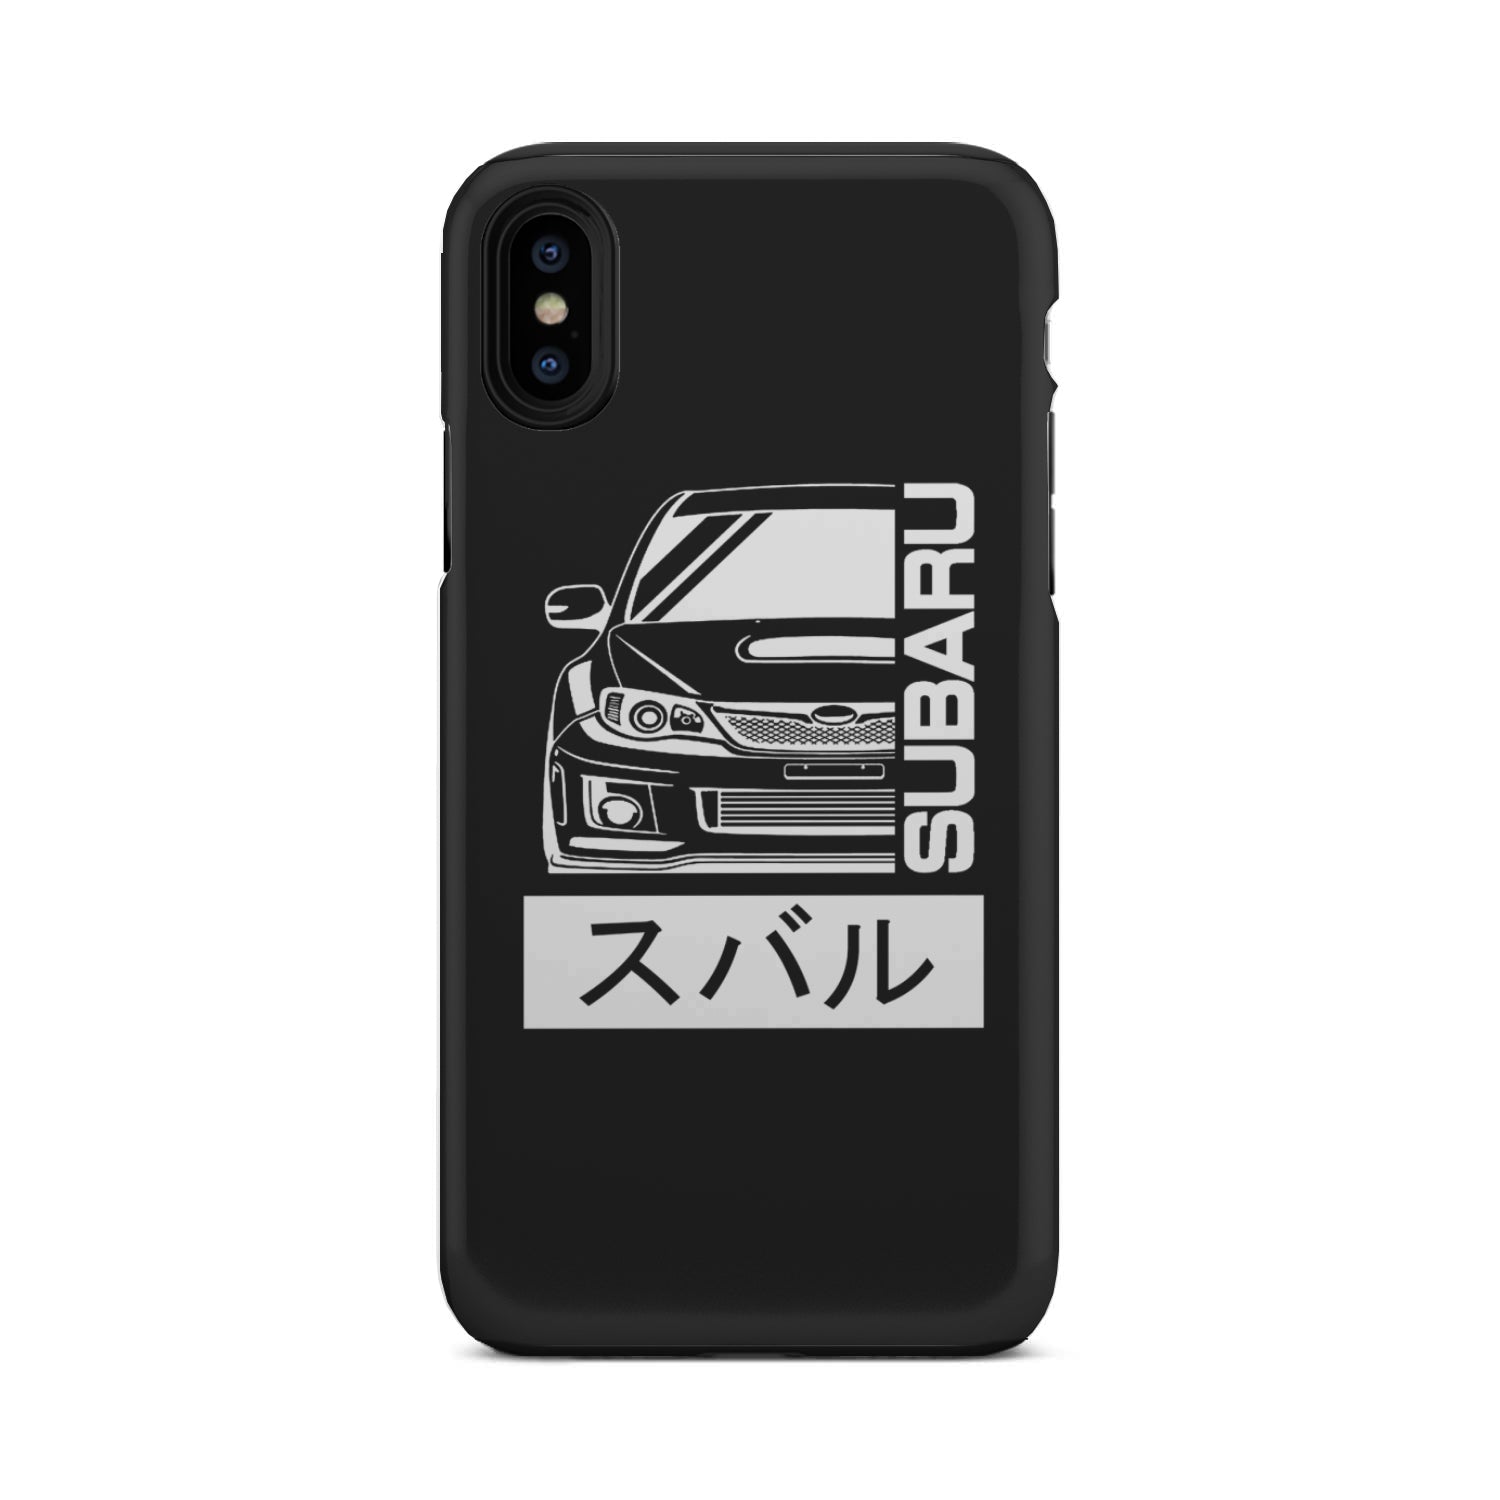 Subaru Gen 5 Phone Case